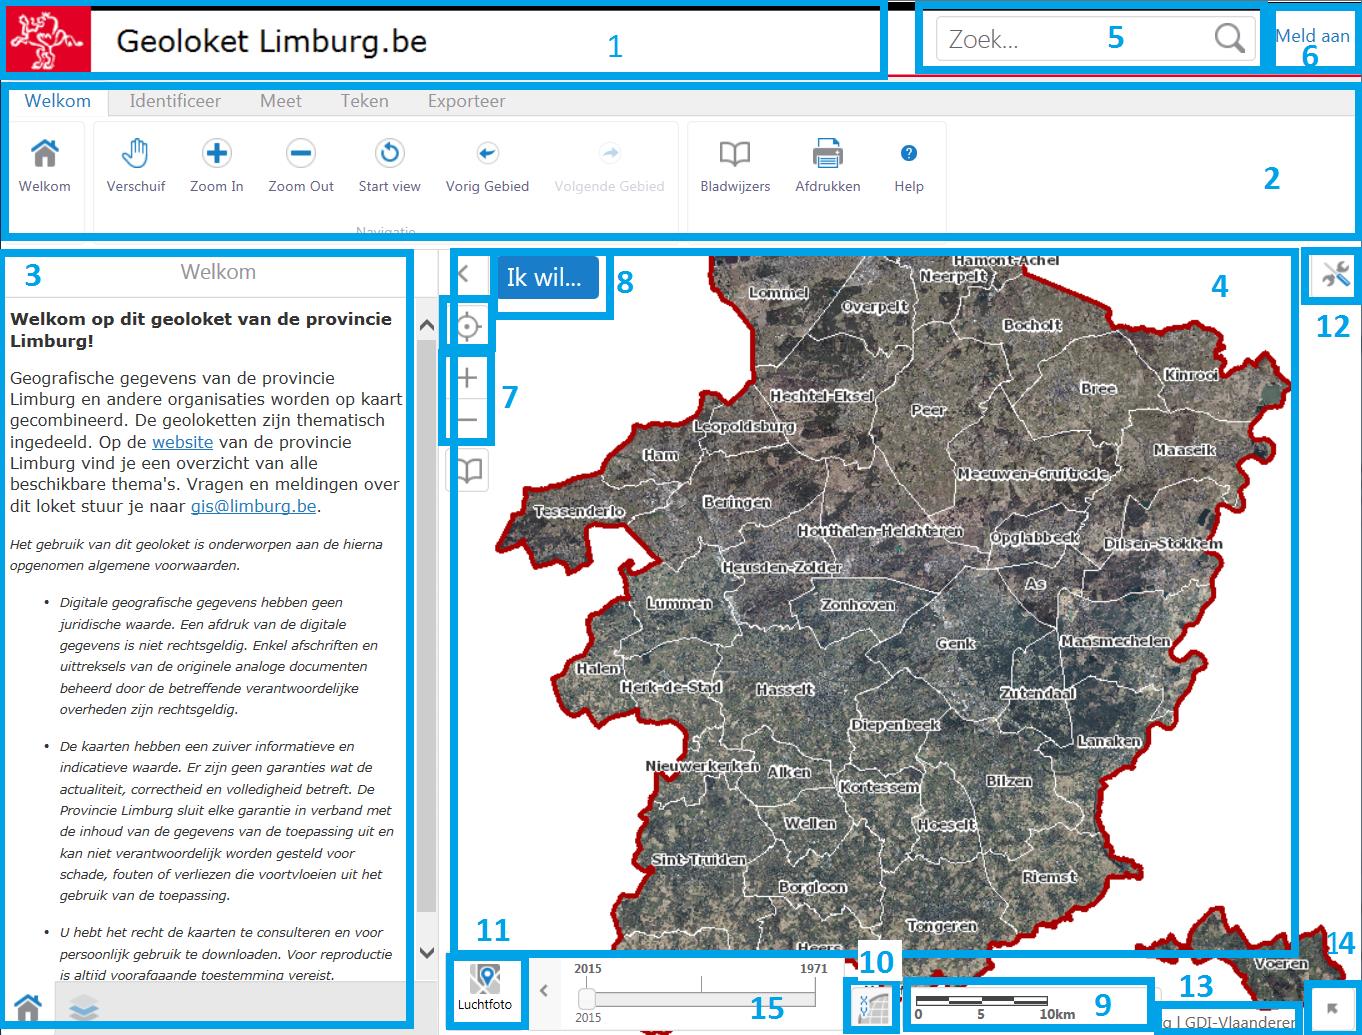 Startscherm Geoloket Atlas der buurtwegen Desktop als voorbeeld om de diverse onderdelen van het loket uit te leggen: - 1 : Titelbalk met logo van de provincie + naam van het geoloket - 2: Werkbalk